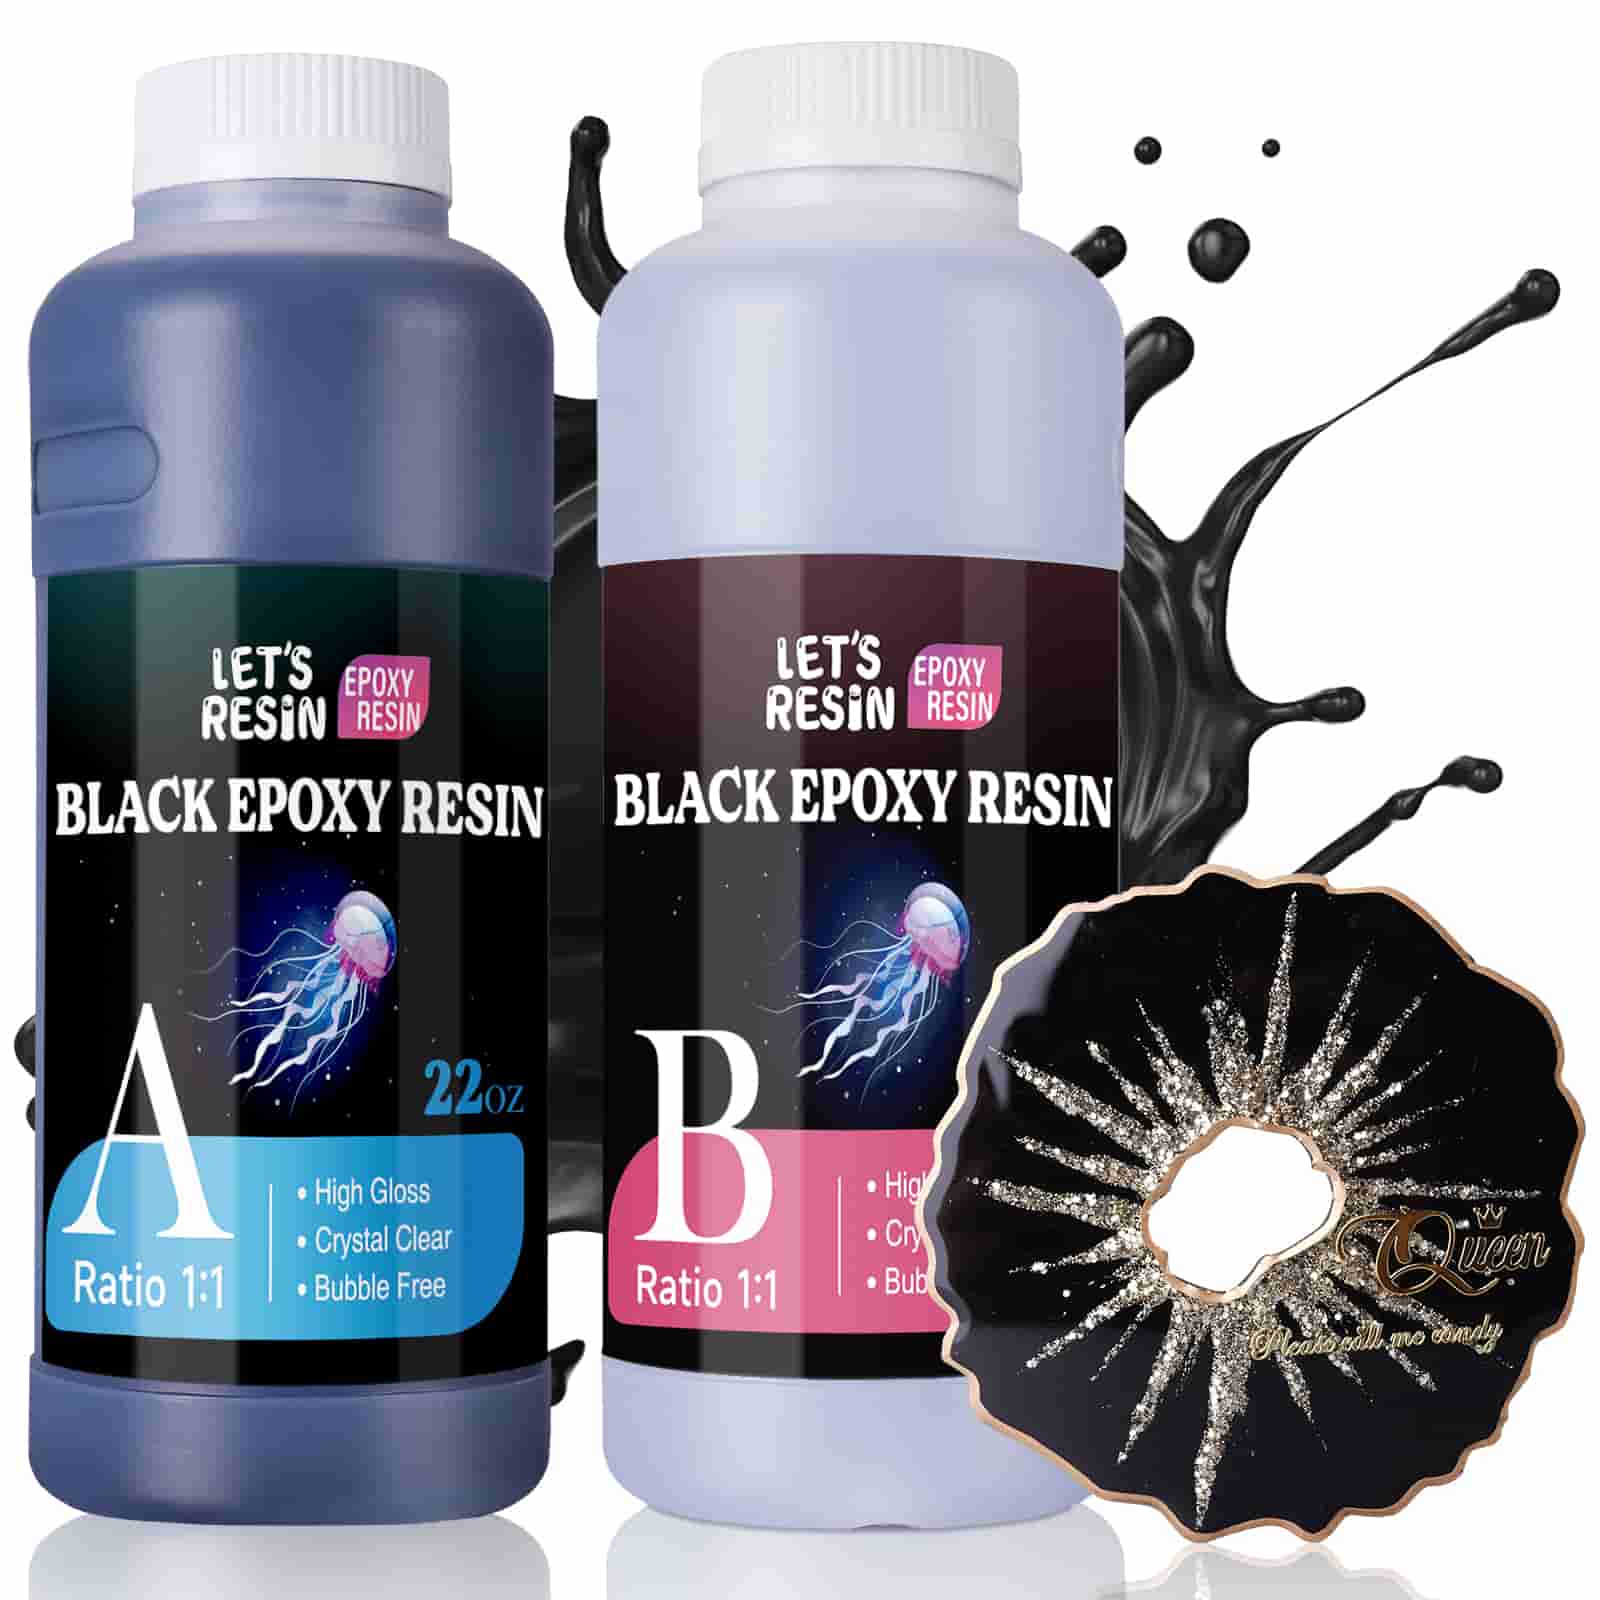 44 oz Black Epoxy Resin – Let's Resin